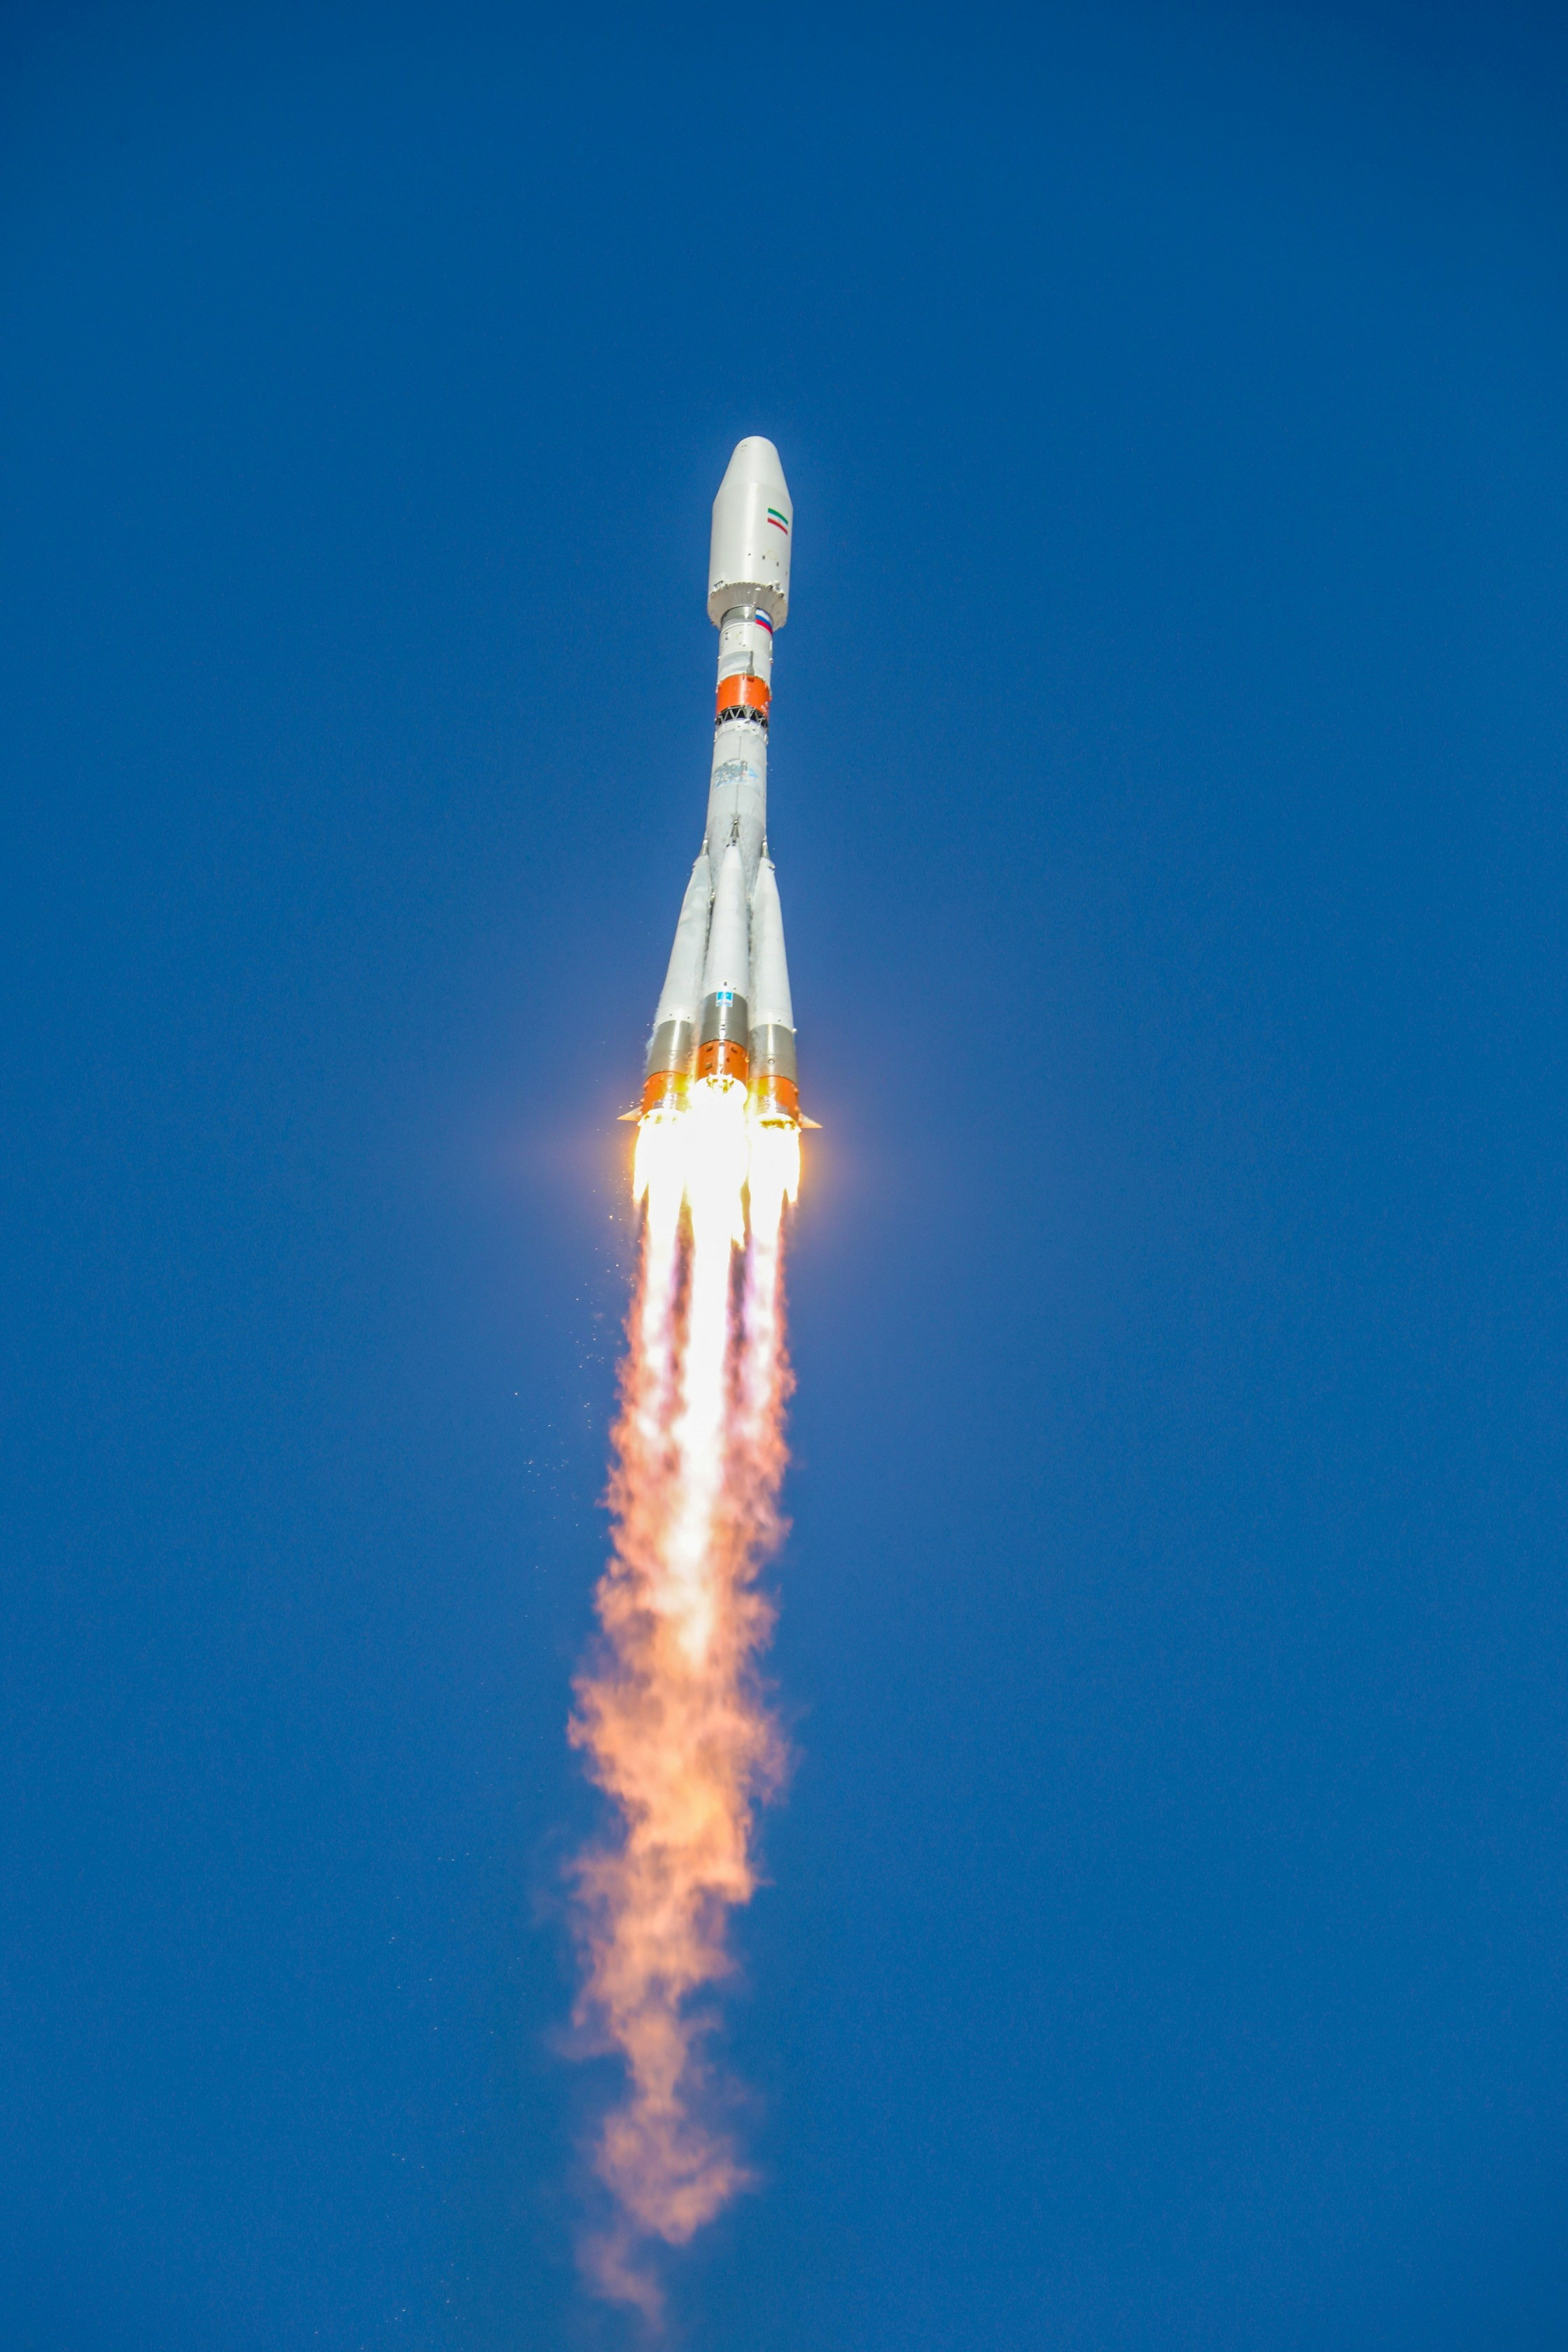 Un cohete Soyuz-2.1b con el satélite iraní "Khayyam" despega de la plataforma de lanzamiento en el cosmódromo de Baikonur, Kazajstán (Roscosmos/REUTERS)